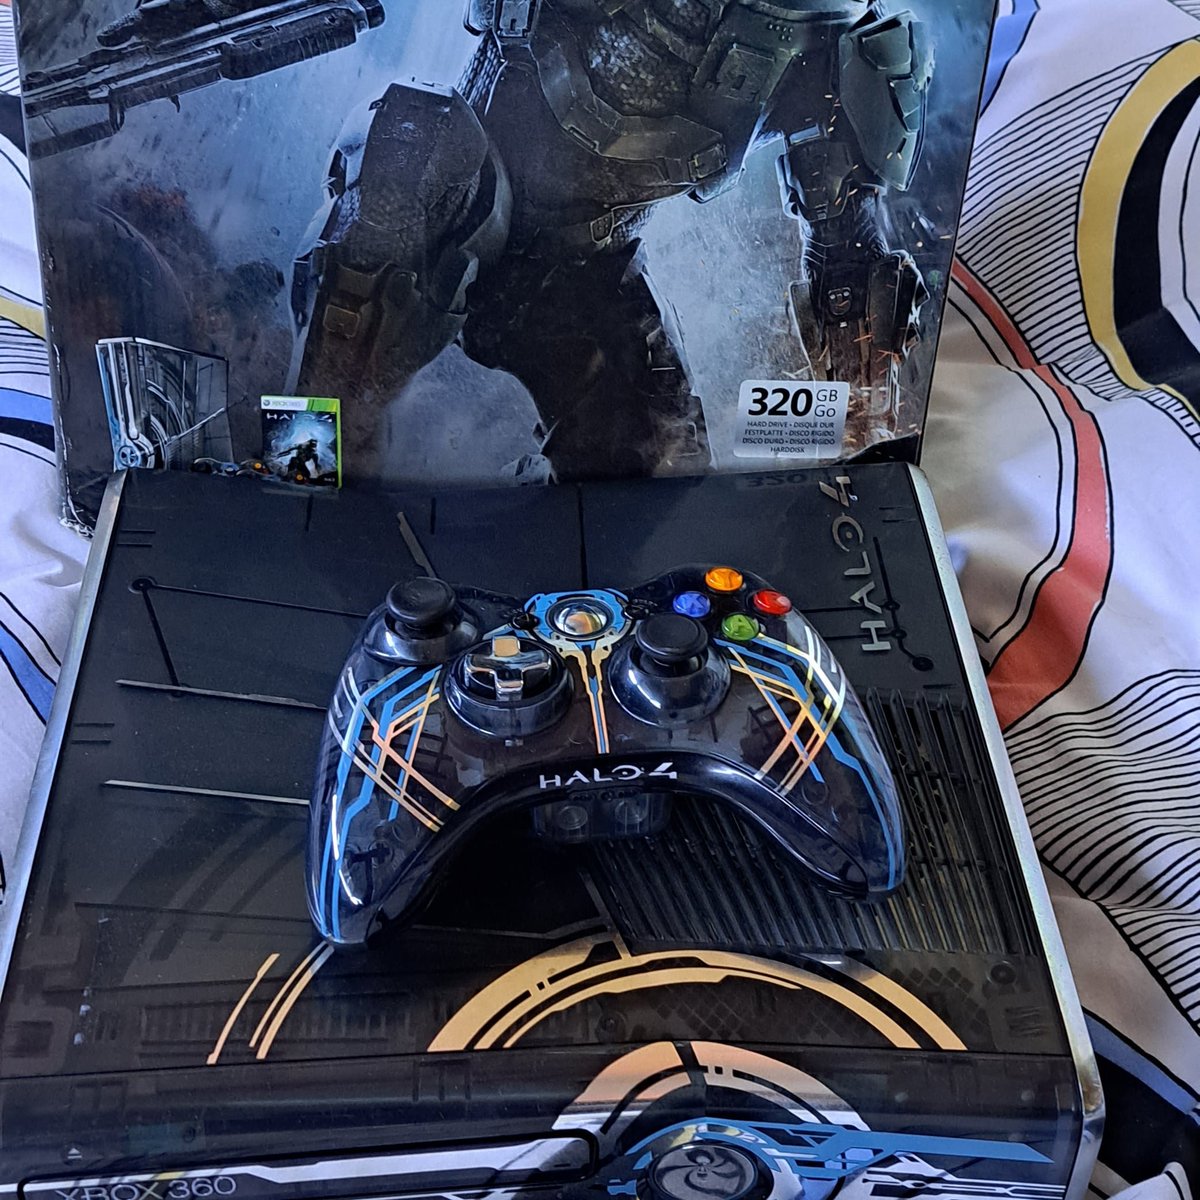 Quelle est votre console que vous chérissez, votre beau bébé qu'il ne faut surtout pas toucher.  😊

Voici la mienne ⬇️

#Xbox
#EditionLimitée
#Halo4